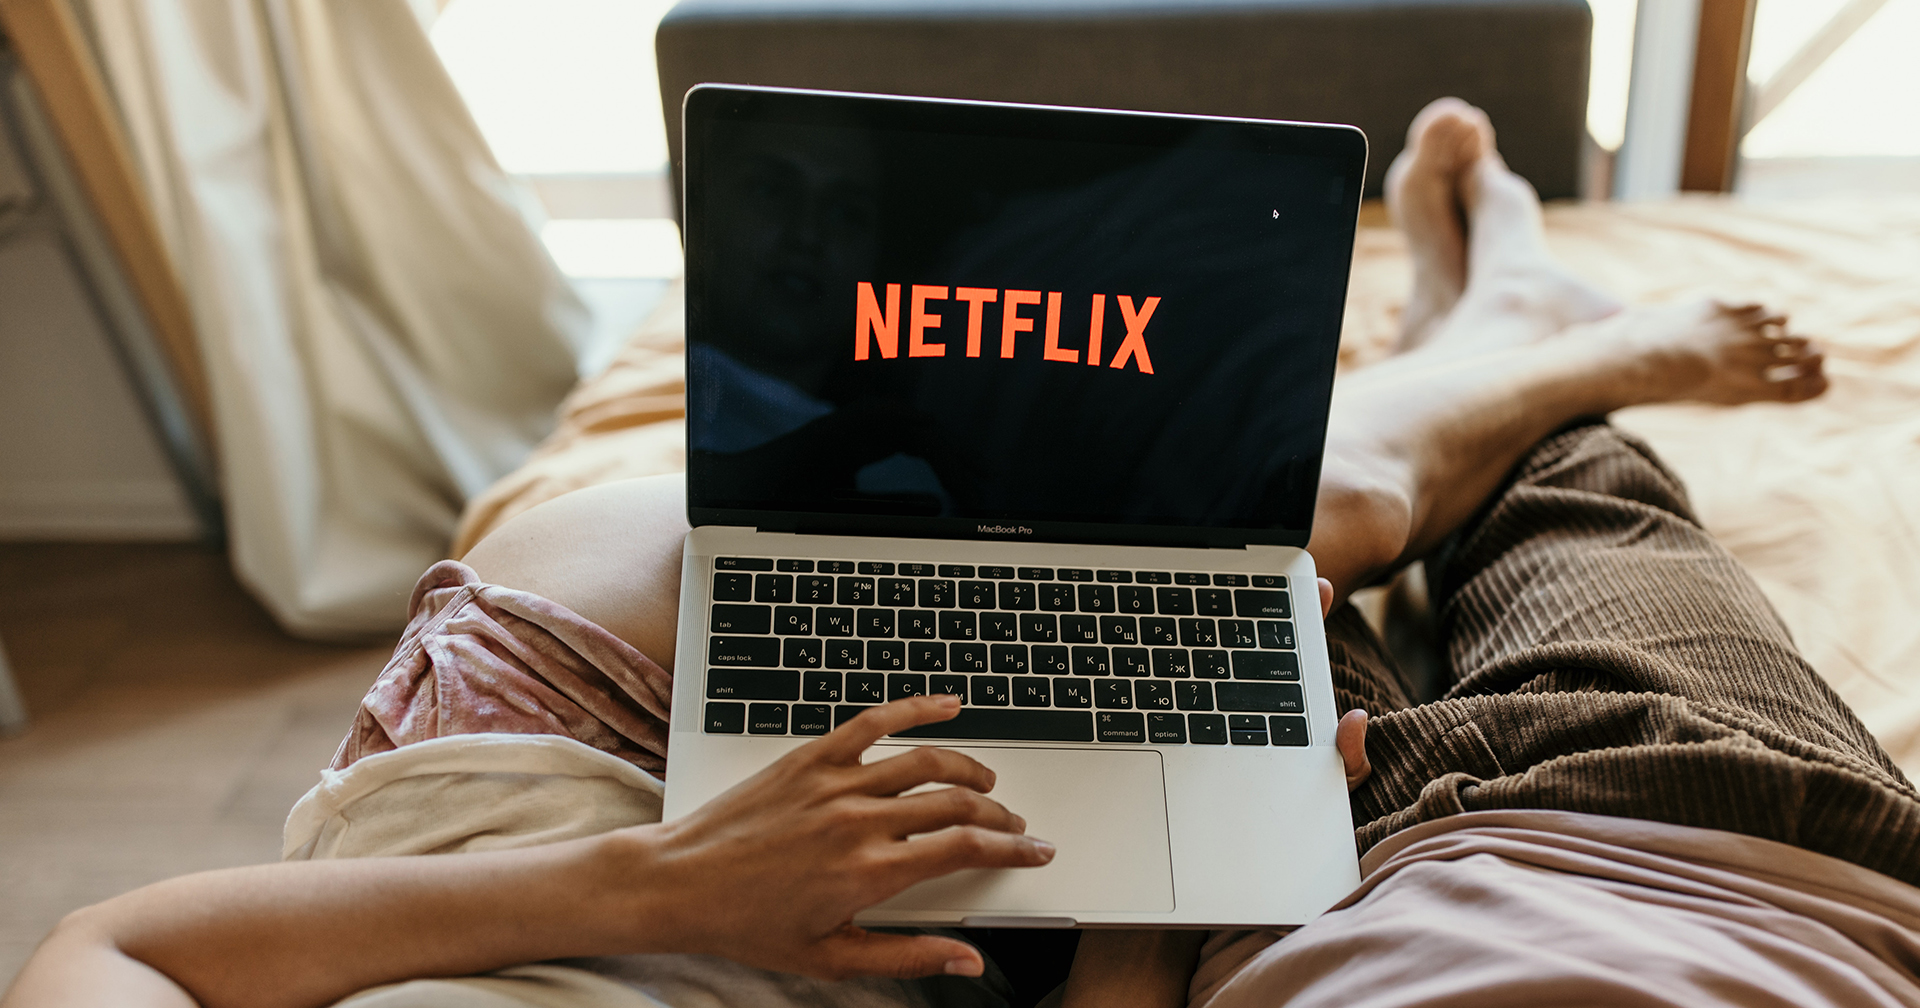 Netflix มีผู้สมัครบริการรายใหม่ลดลง ในไตรมาสแรก ปี 2021